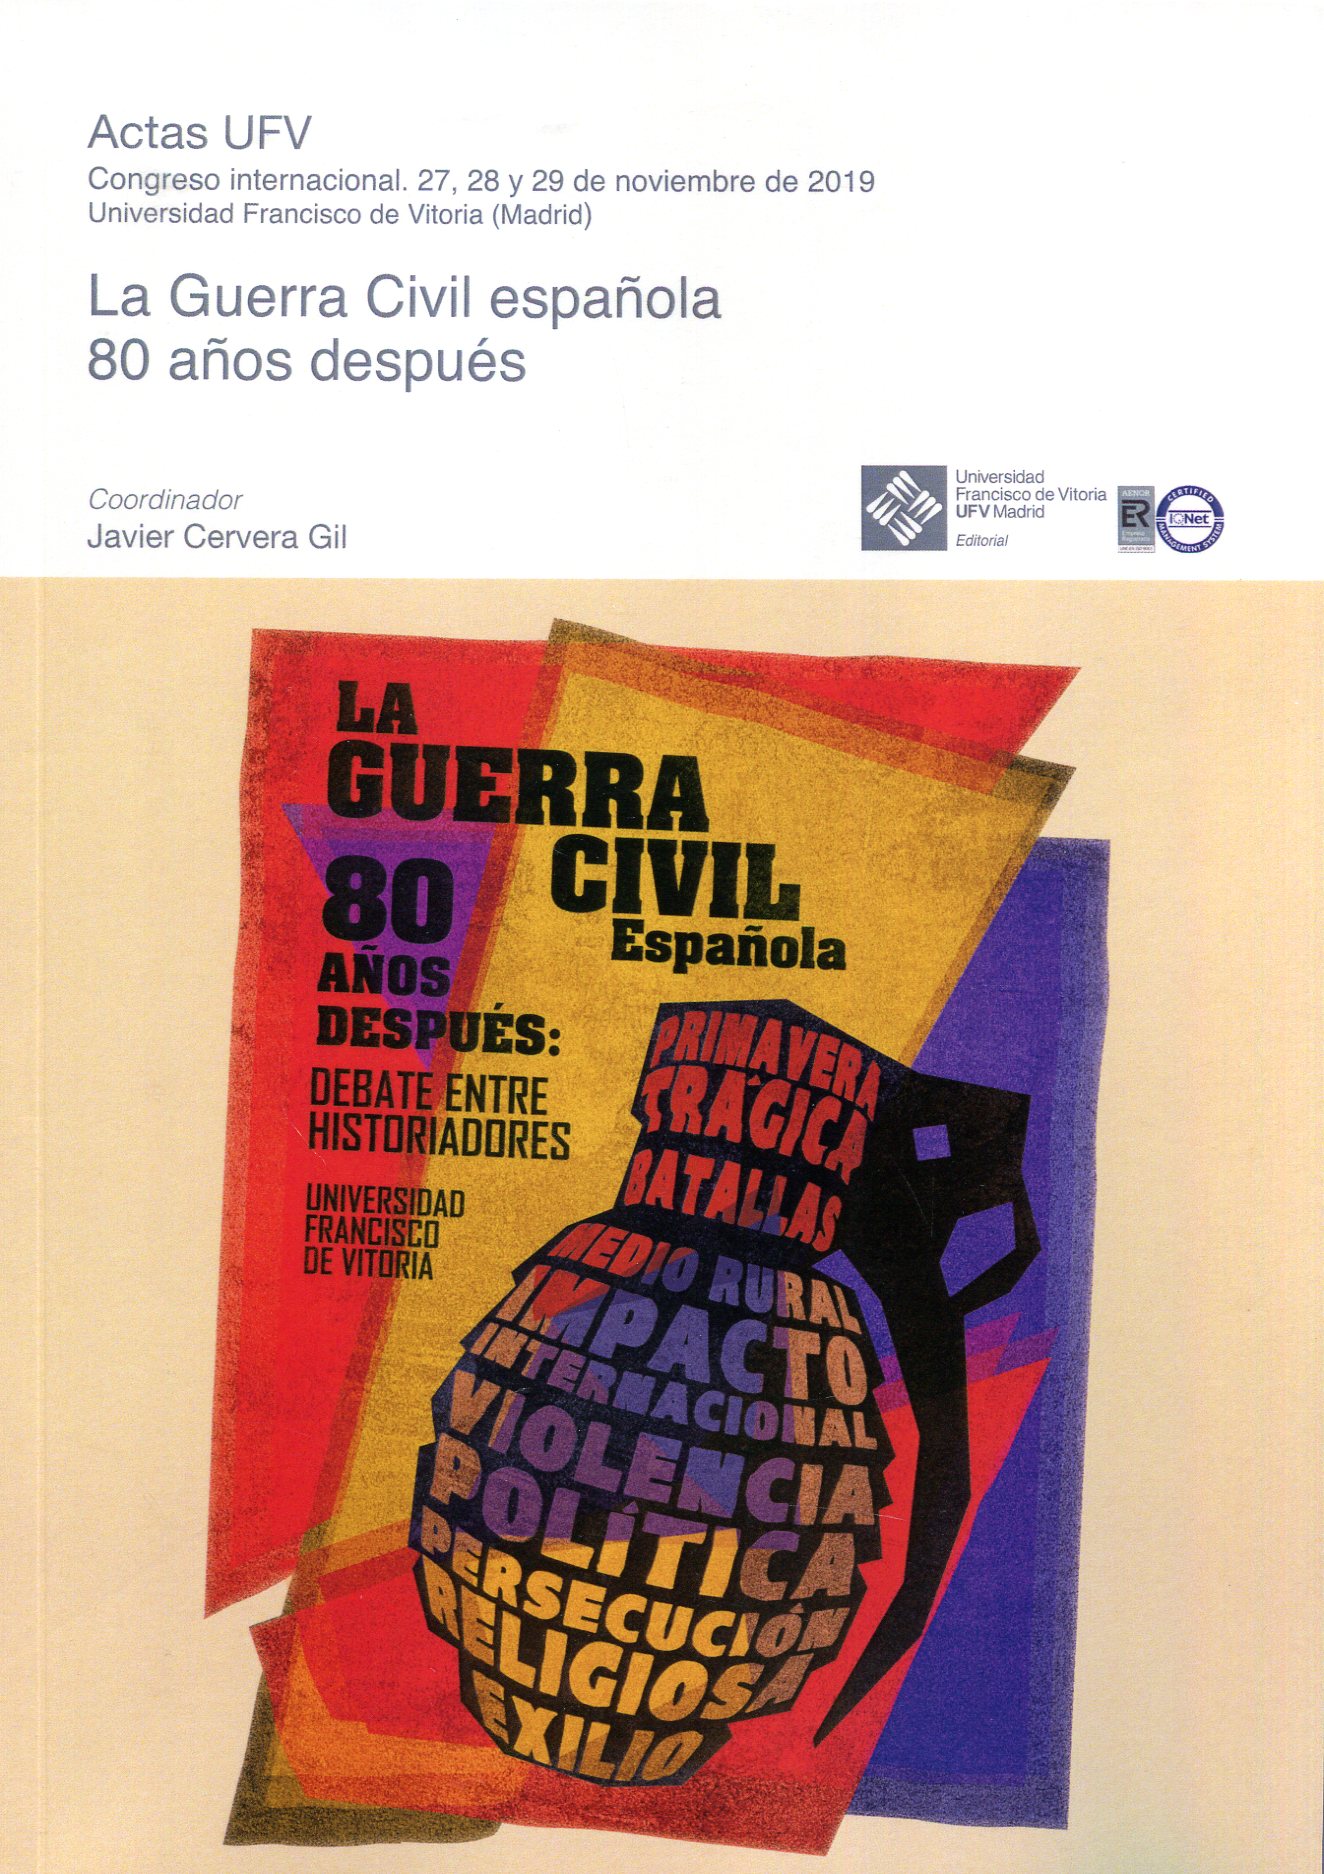 La Guerra Civil española 80 años después